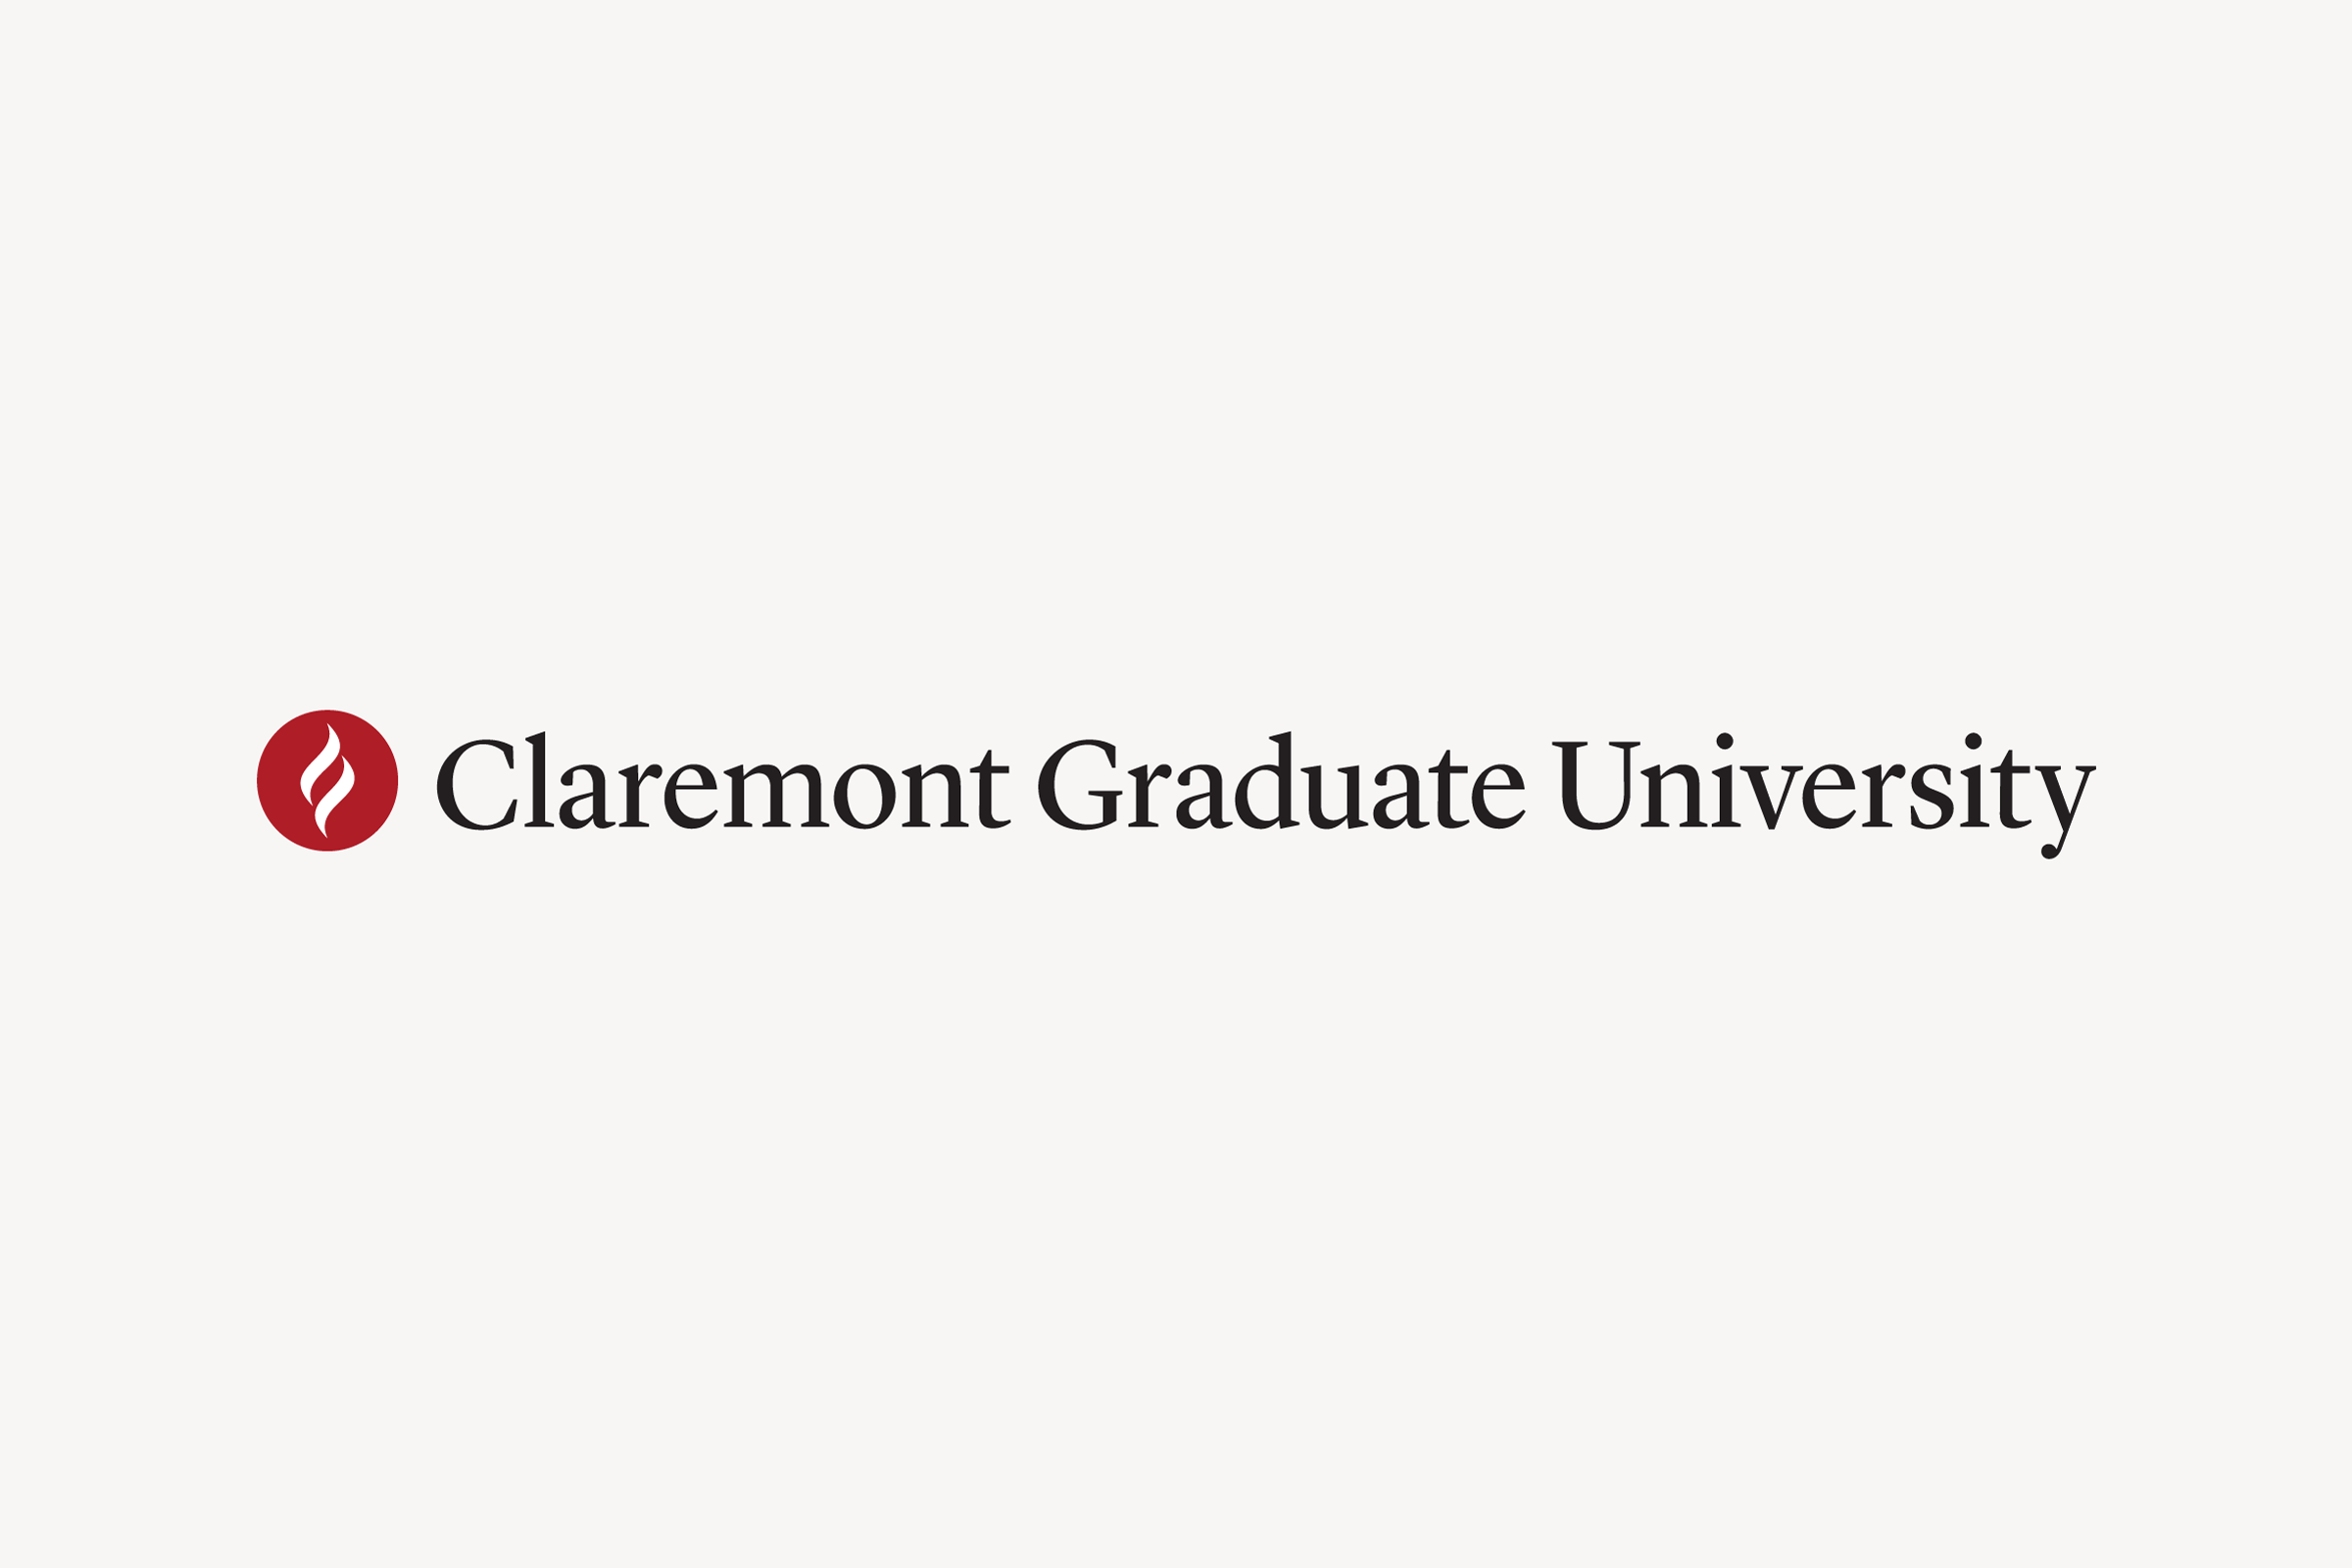 Claremont Graduate University